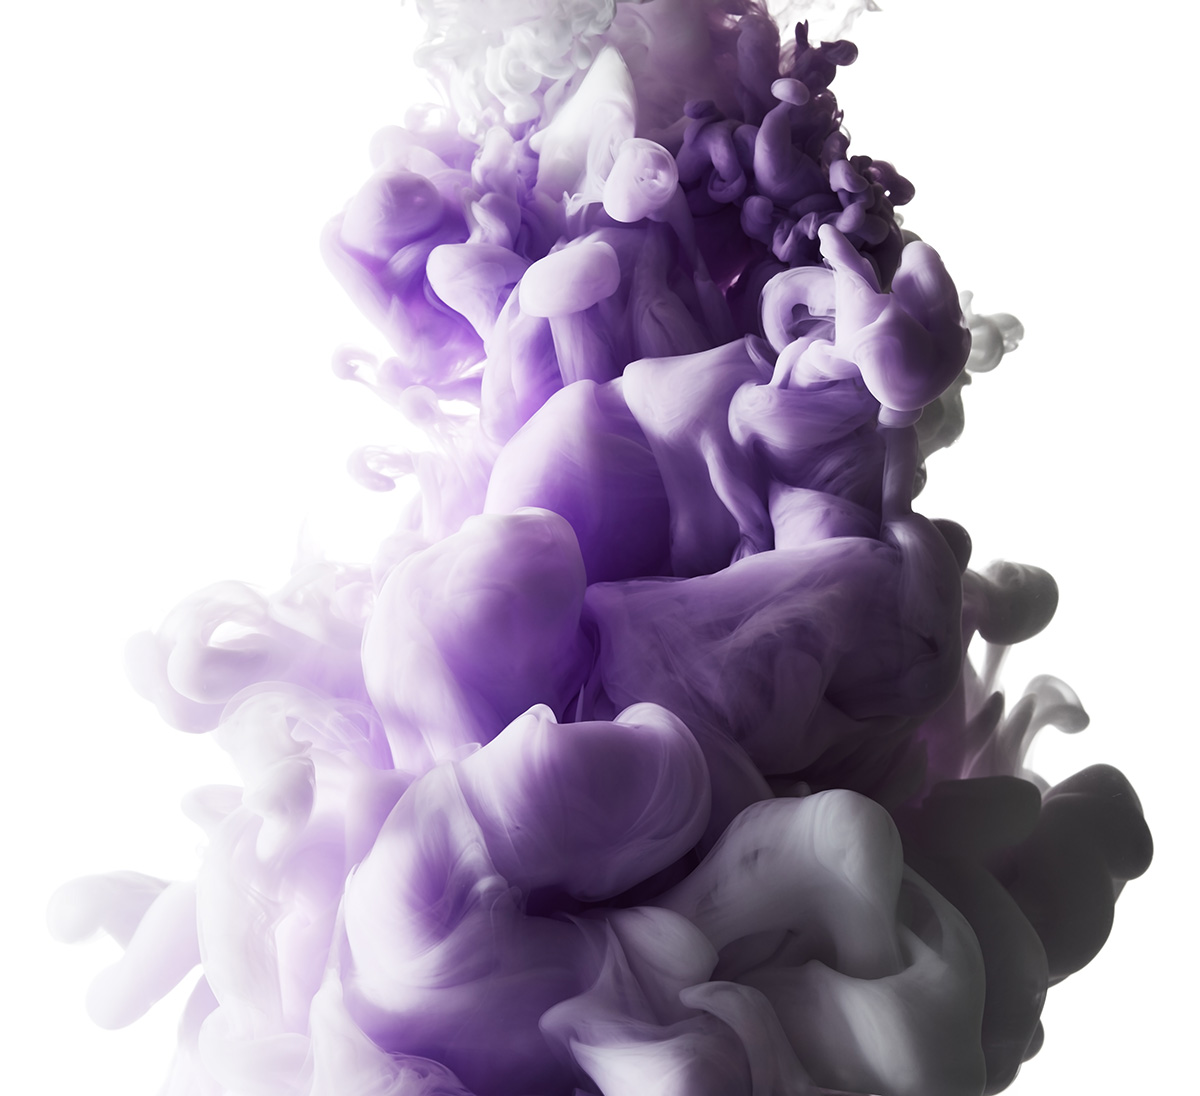 彩色渐变抽象梦幻水彩烟雾油漆效果高清背景JPG图片设计素材8